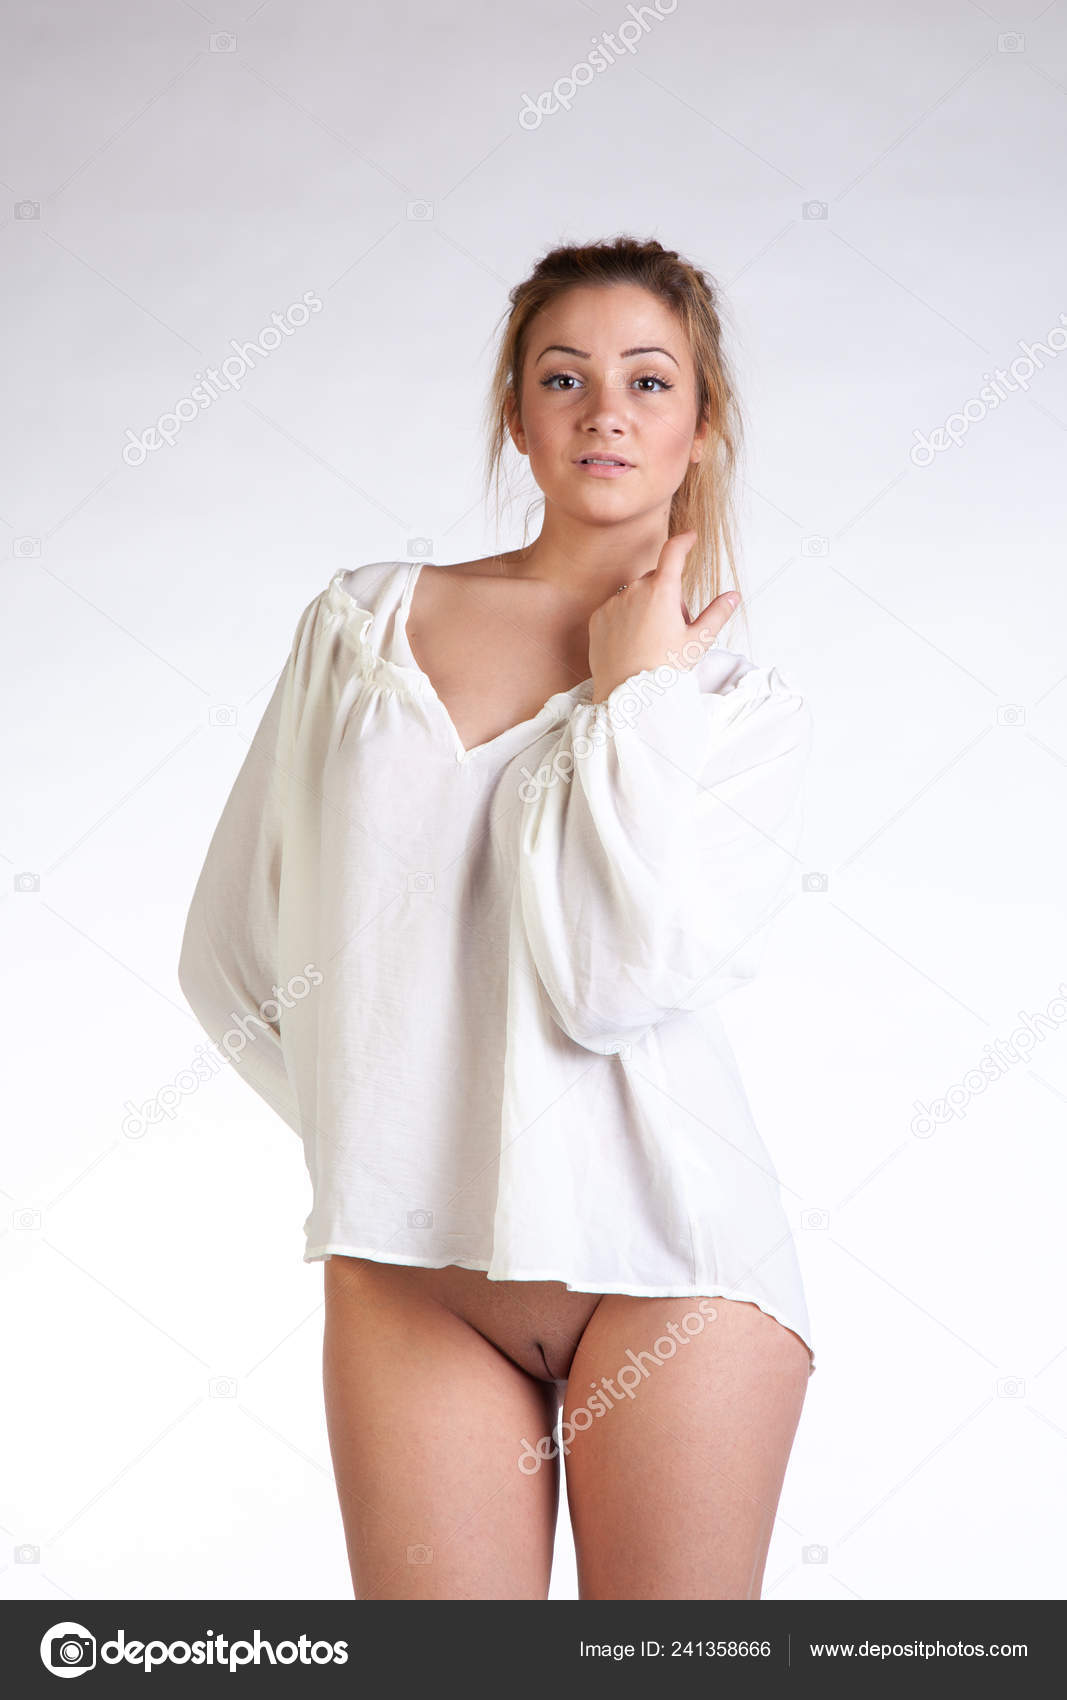 https://st4n.depositphotos.com/10086424/24135/i/1600/depositphotos_241358666-stock-photo-young-beautiful-girl-posing-nude.jpg